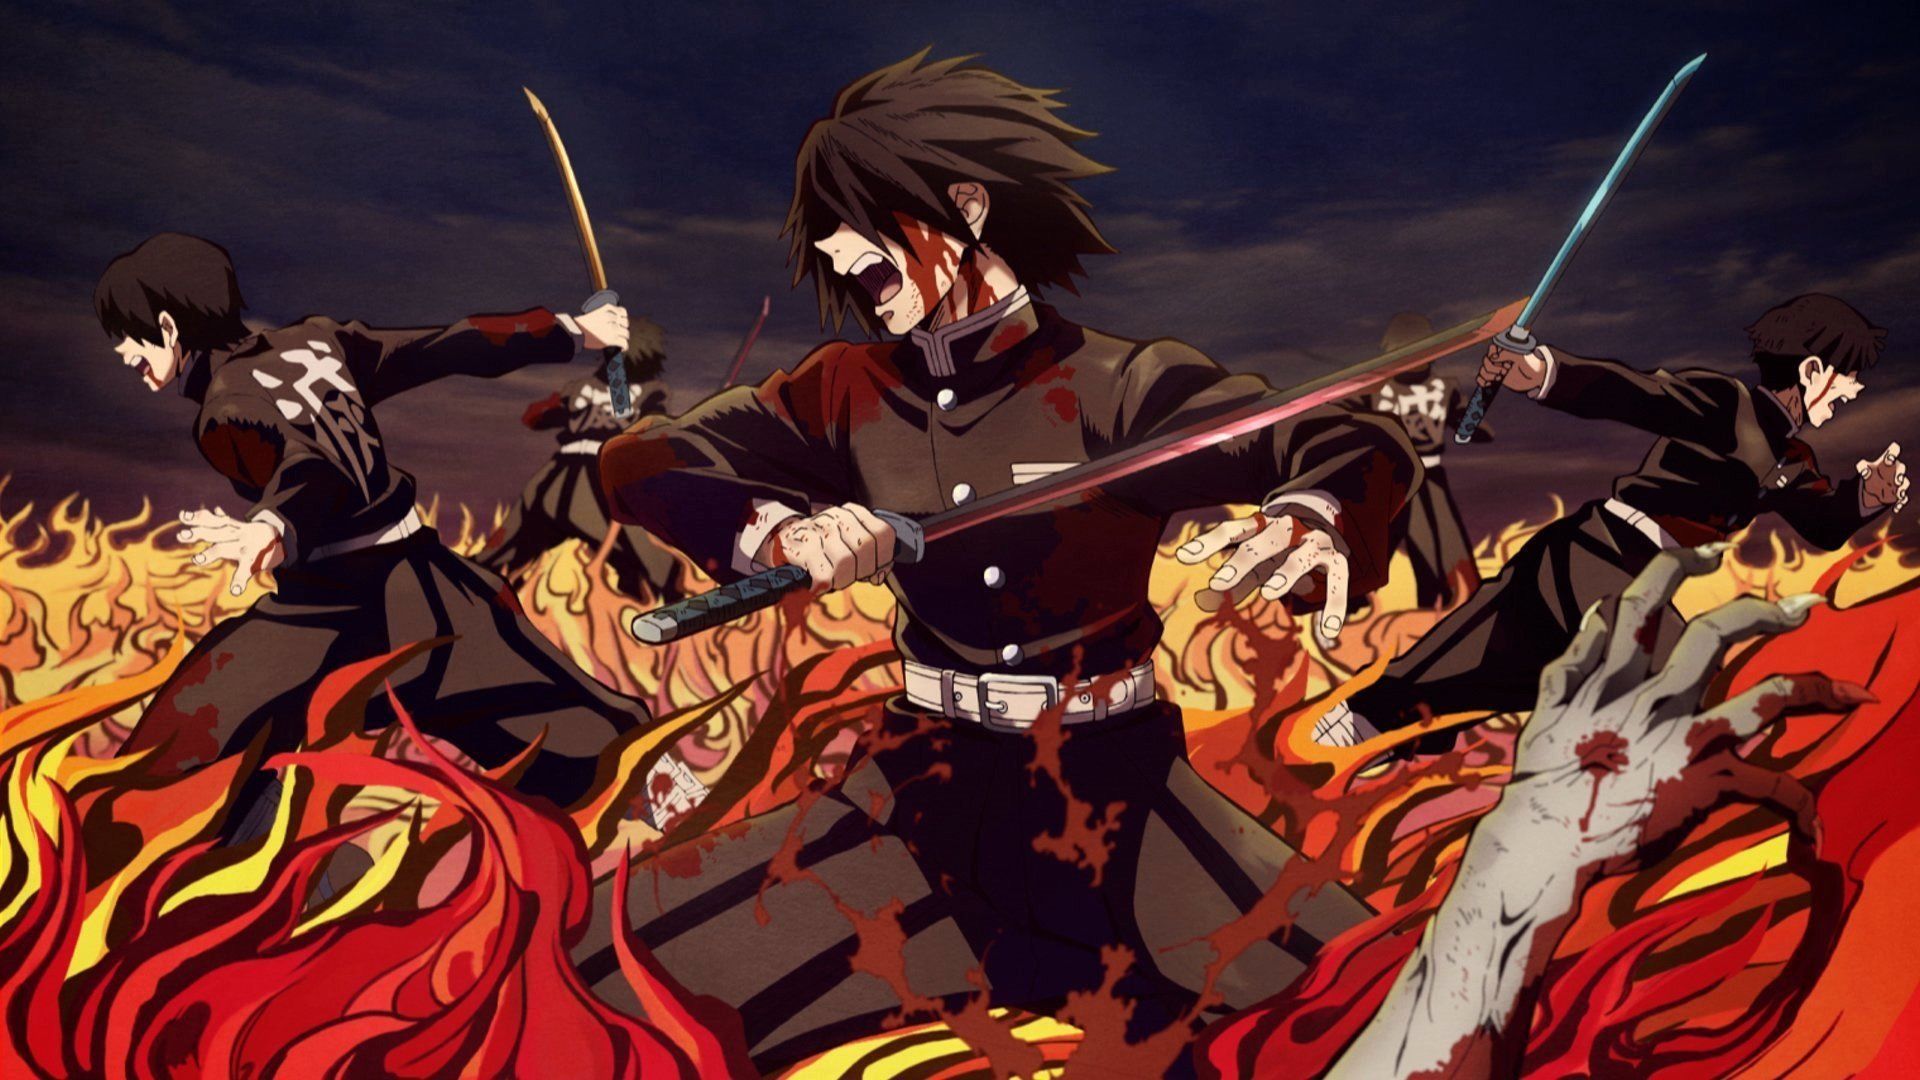 Best Demon Slayer Wallpaper image. Anime, Wallpaper